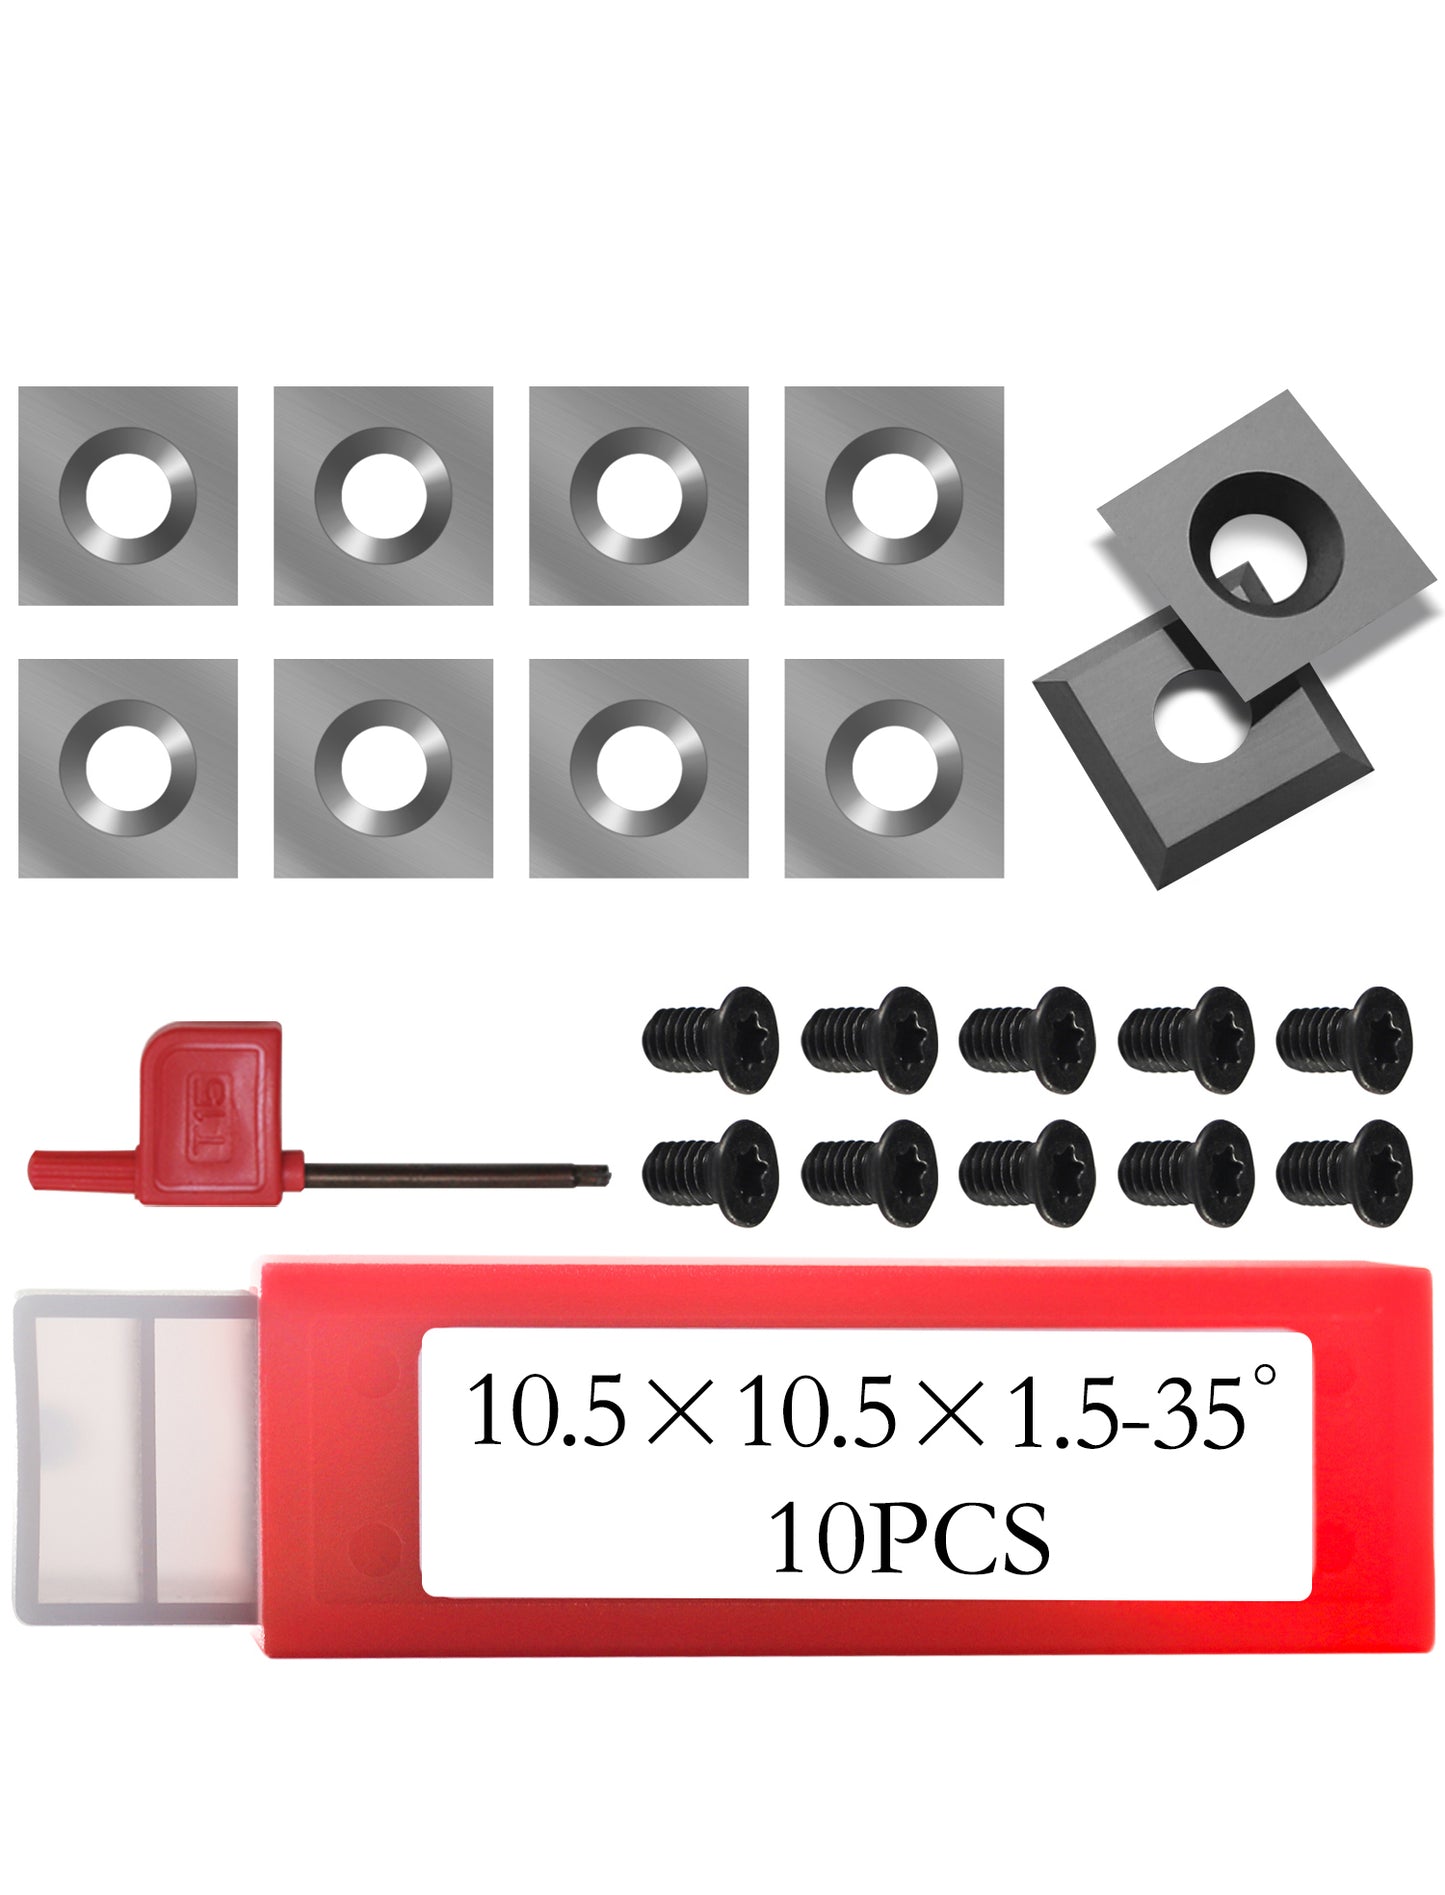 10.5 mm square carbide insert cutter 10.5 x 10.5 x 1.5 mm